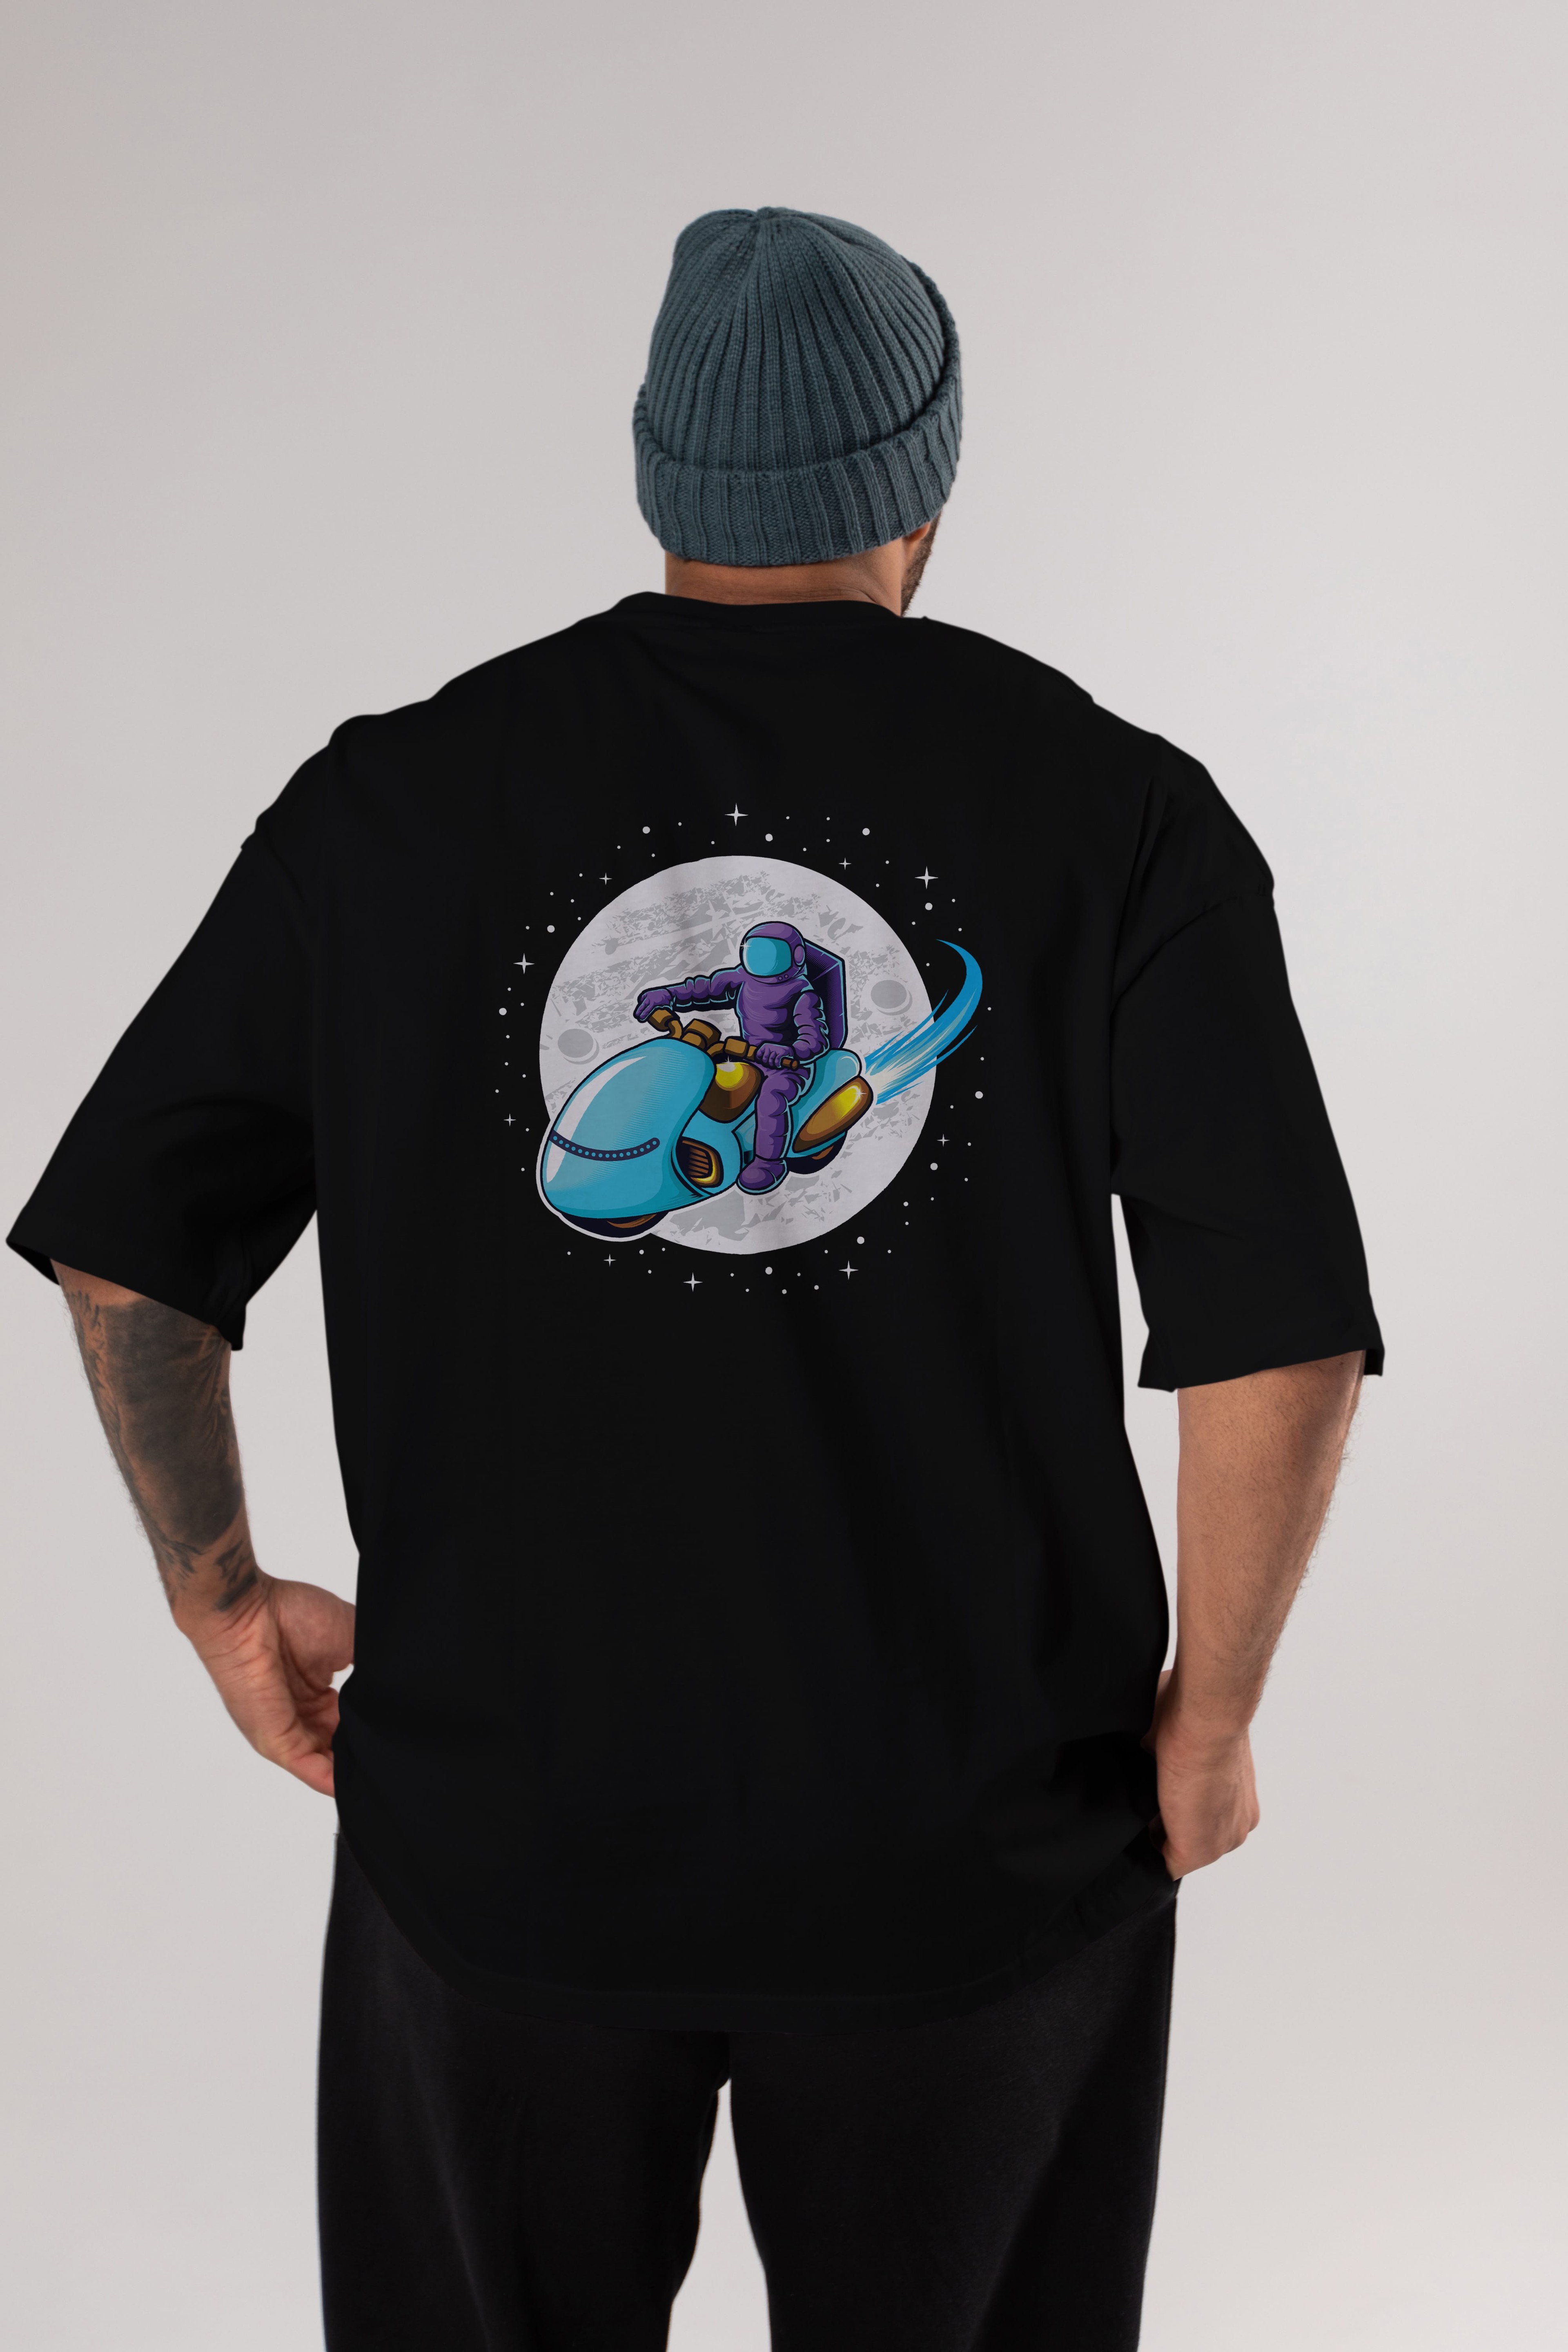 Astrorider in Space Arka Baskılı Oversize t-shirt Erkek Kadın Unisex